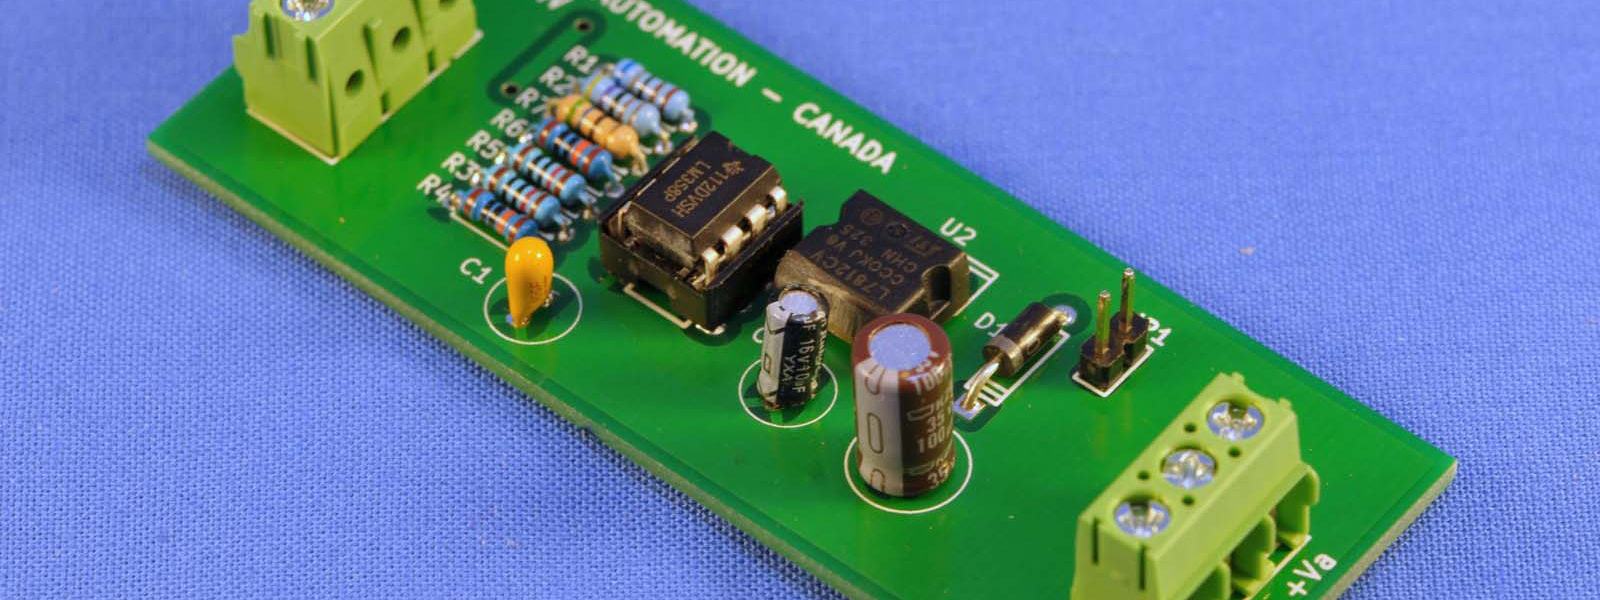 Conditioner for LM35 temperature sensor (BOARD)